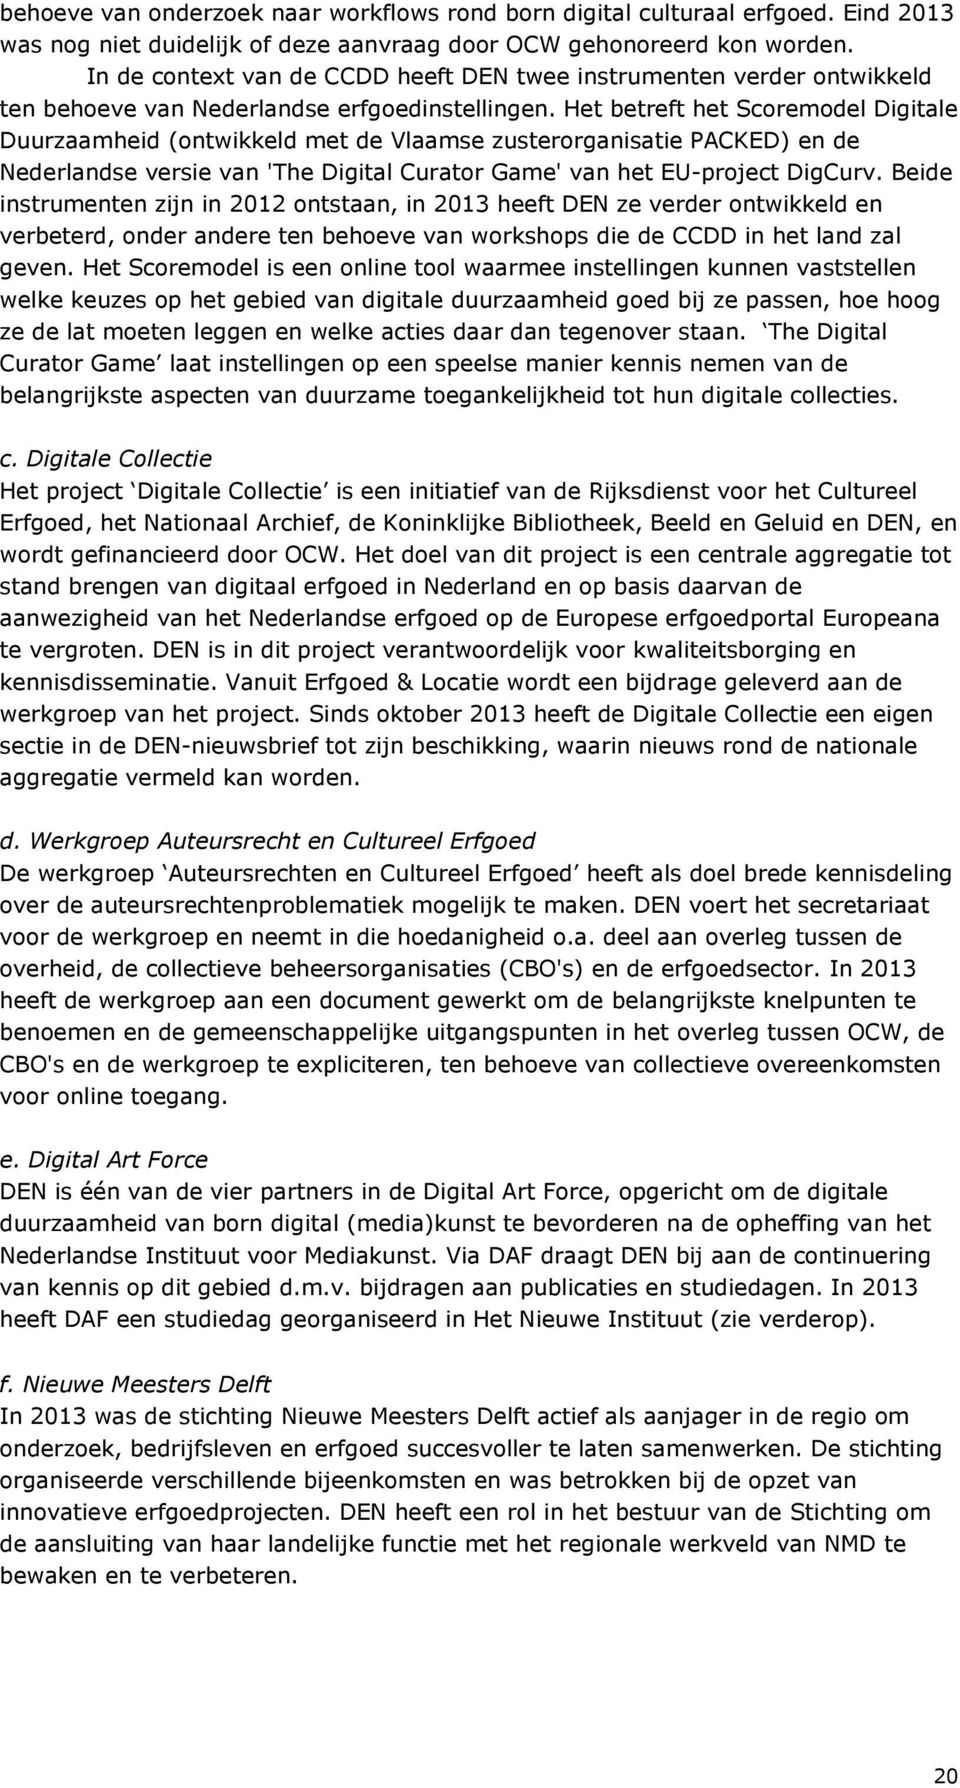 Het betreft het Scoremodel Digitale Duurzaamheid (ontwikkeld met de Vlaamse zusterorganisatie PACKED) en de Nederlandse versie van 'The Digital Curator Game' van het EU-project DigCurv.